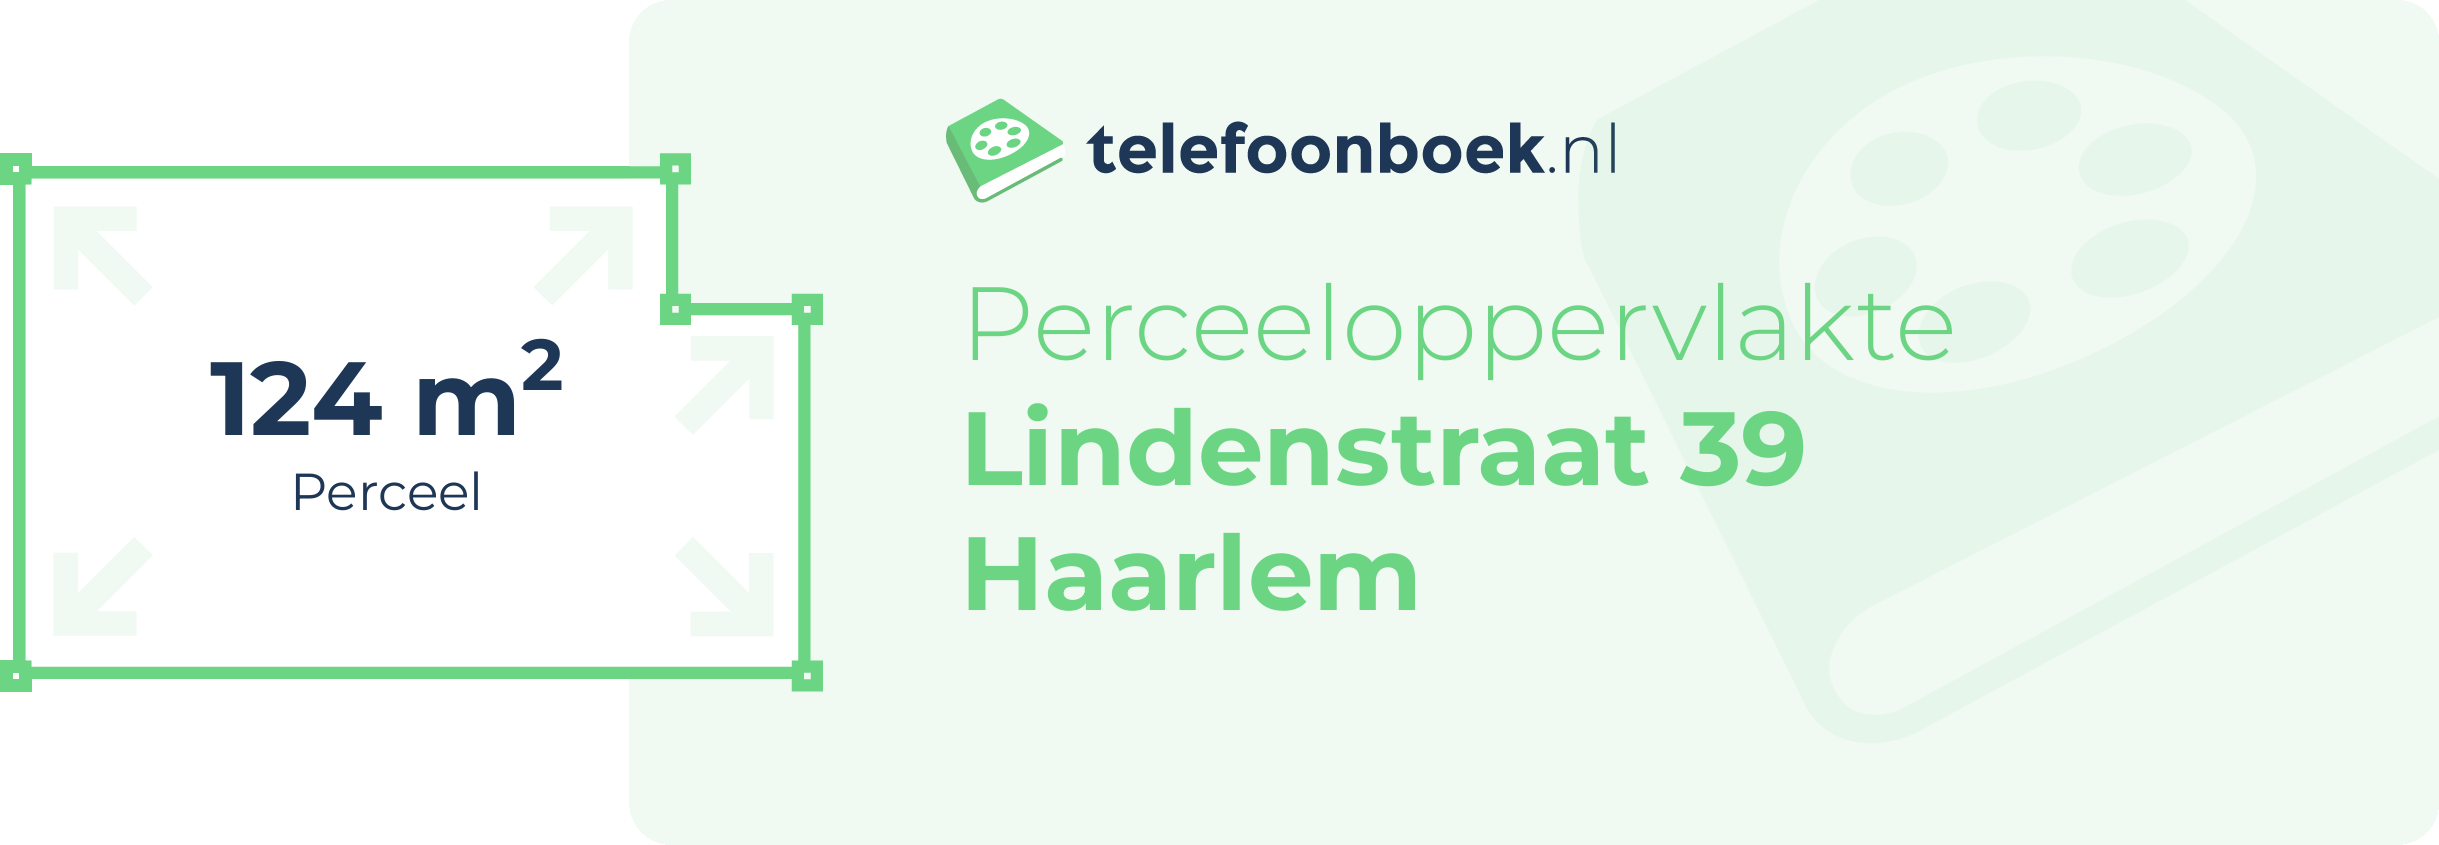 Perceeloppervlakte Lindenstraat 39 Haarlem